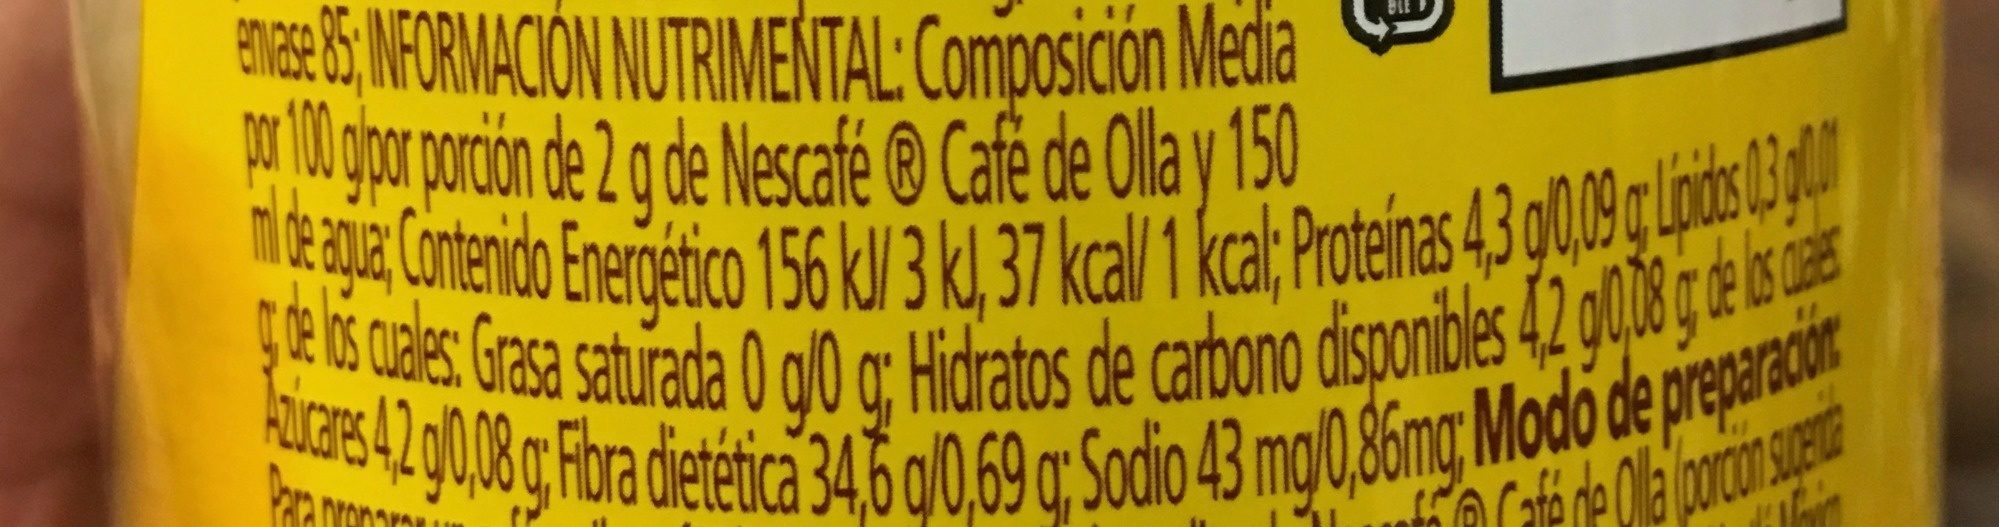 Café de olla - Información nutricional